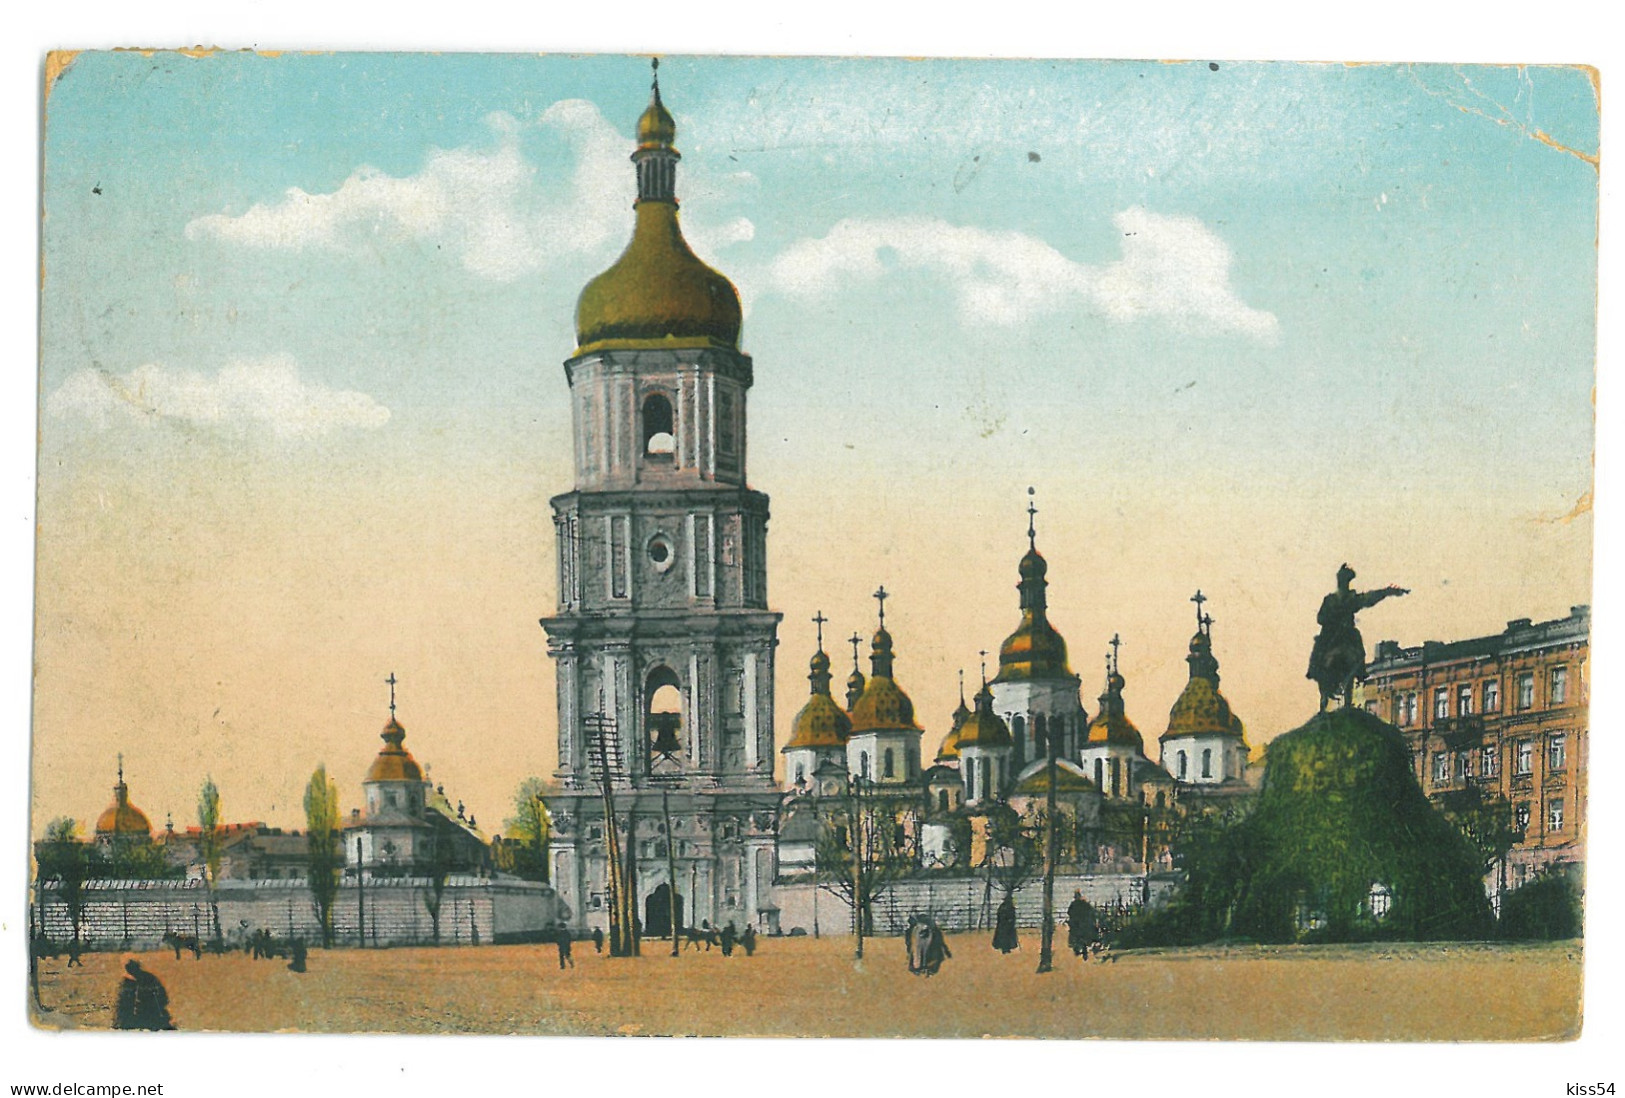 UK 60 - 23226 KIEV, Cathedral ST. SOPHIA, Ukraine - Old Postcard - Used - 1912 - Ukraine